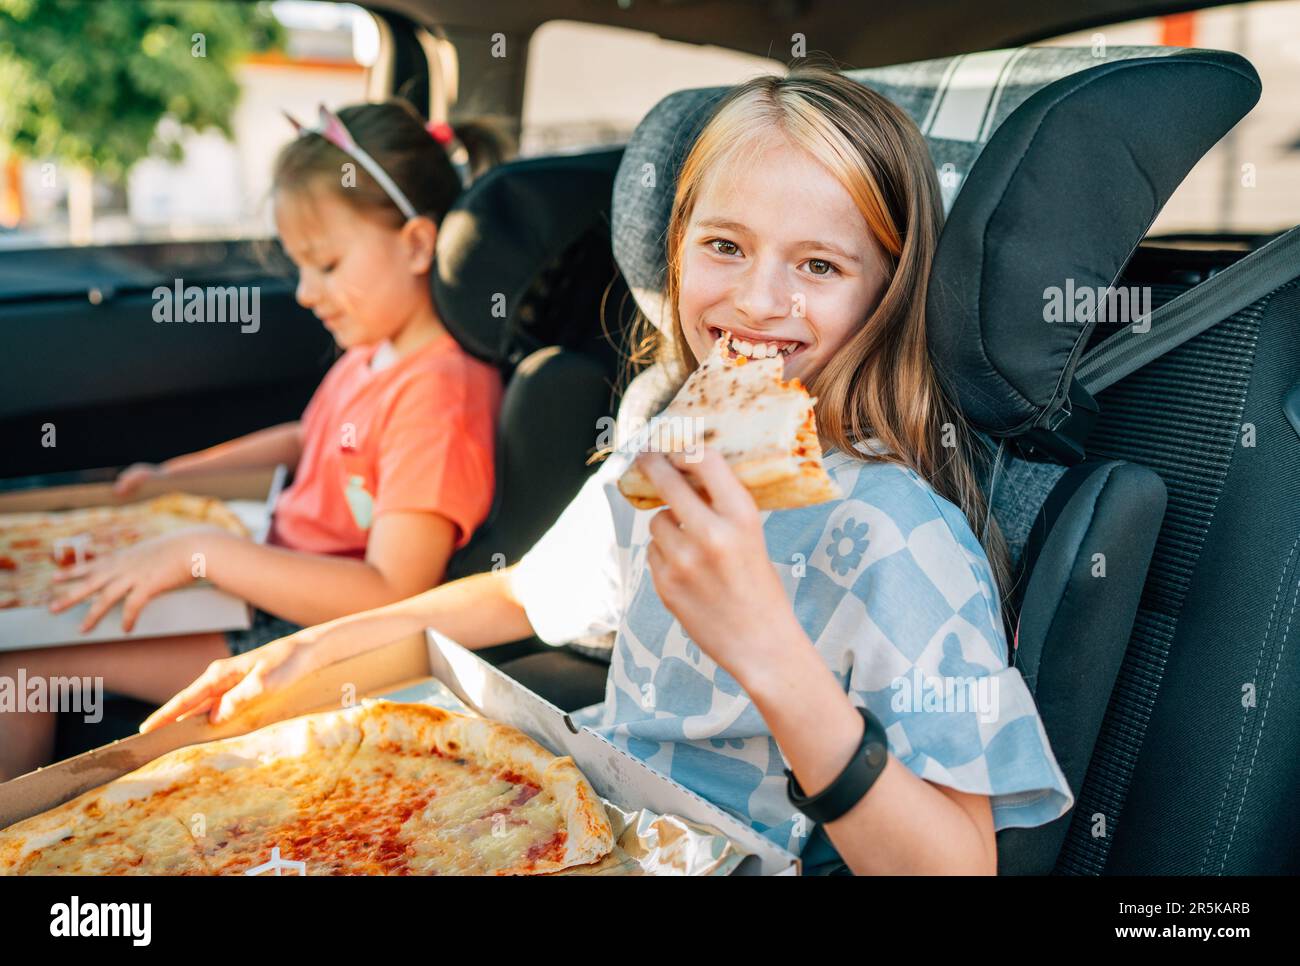 Ritratto di una ragazza sorridente positiva che mangia una pizza italiana appena cotta seduta con una sorella sul sedile posteriore dell'automobile nei seggiolini dell'automobile del bambino. Buona infanzia, fastfoo Foto Stock